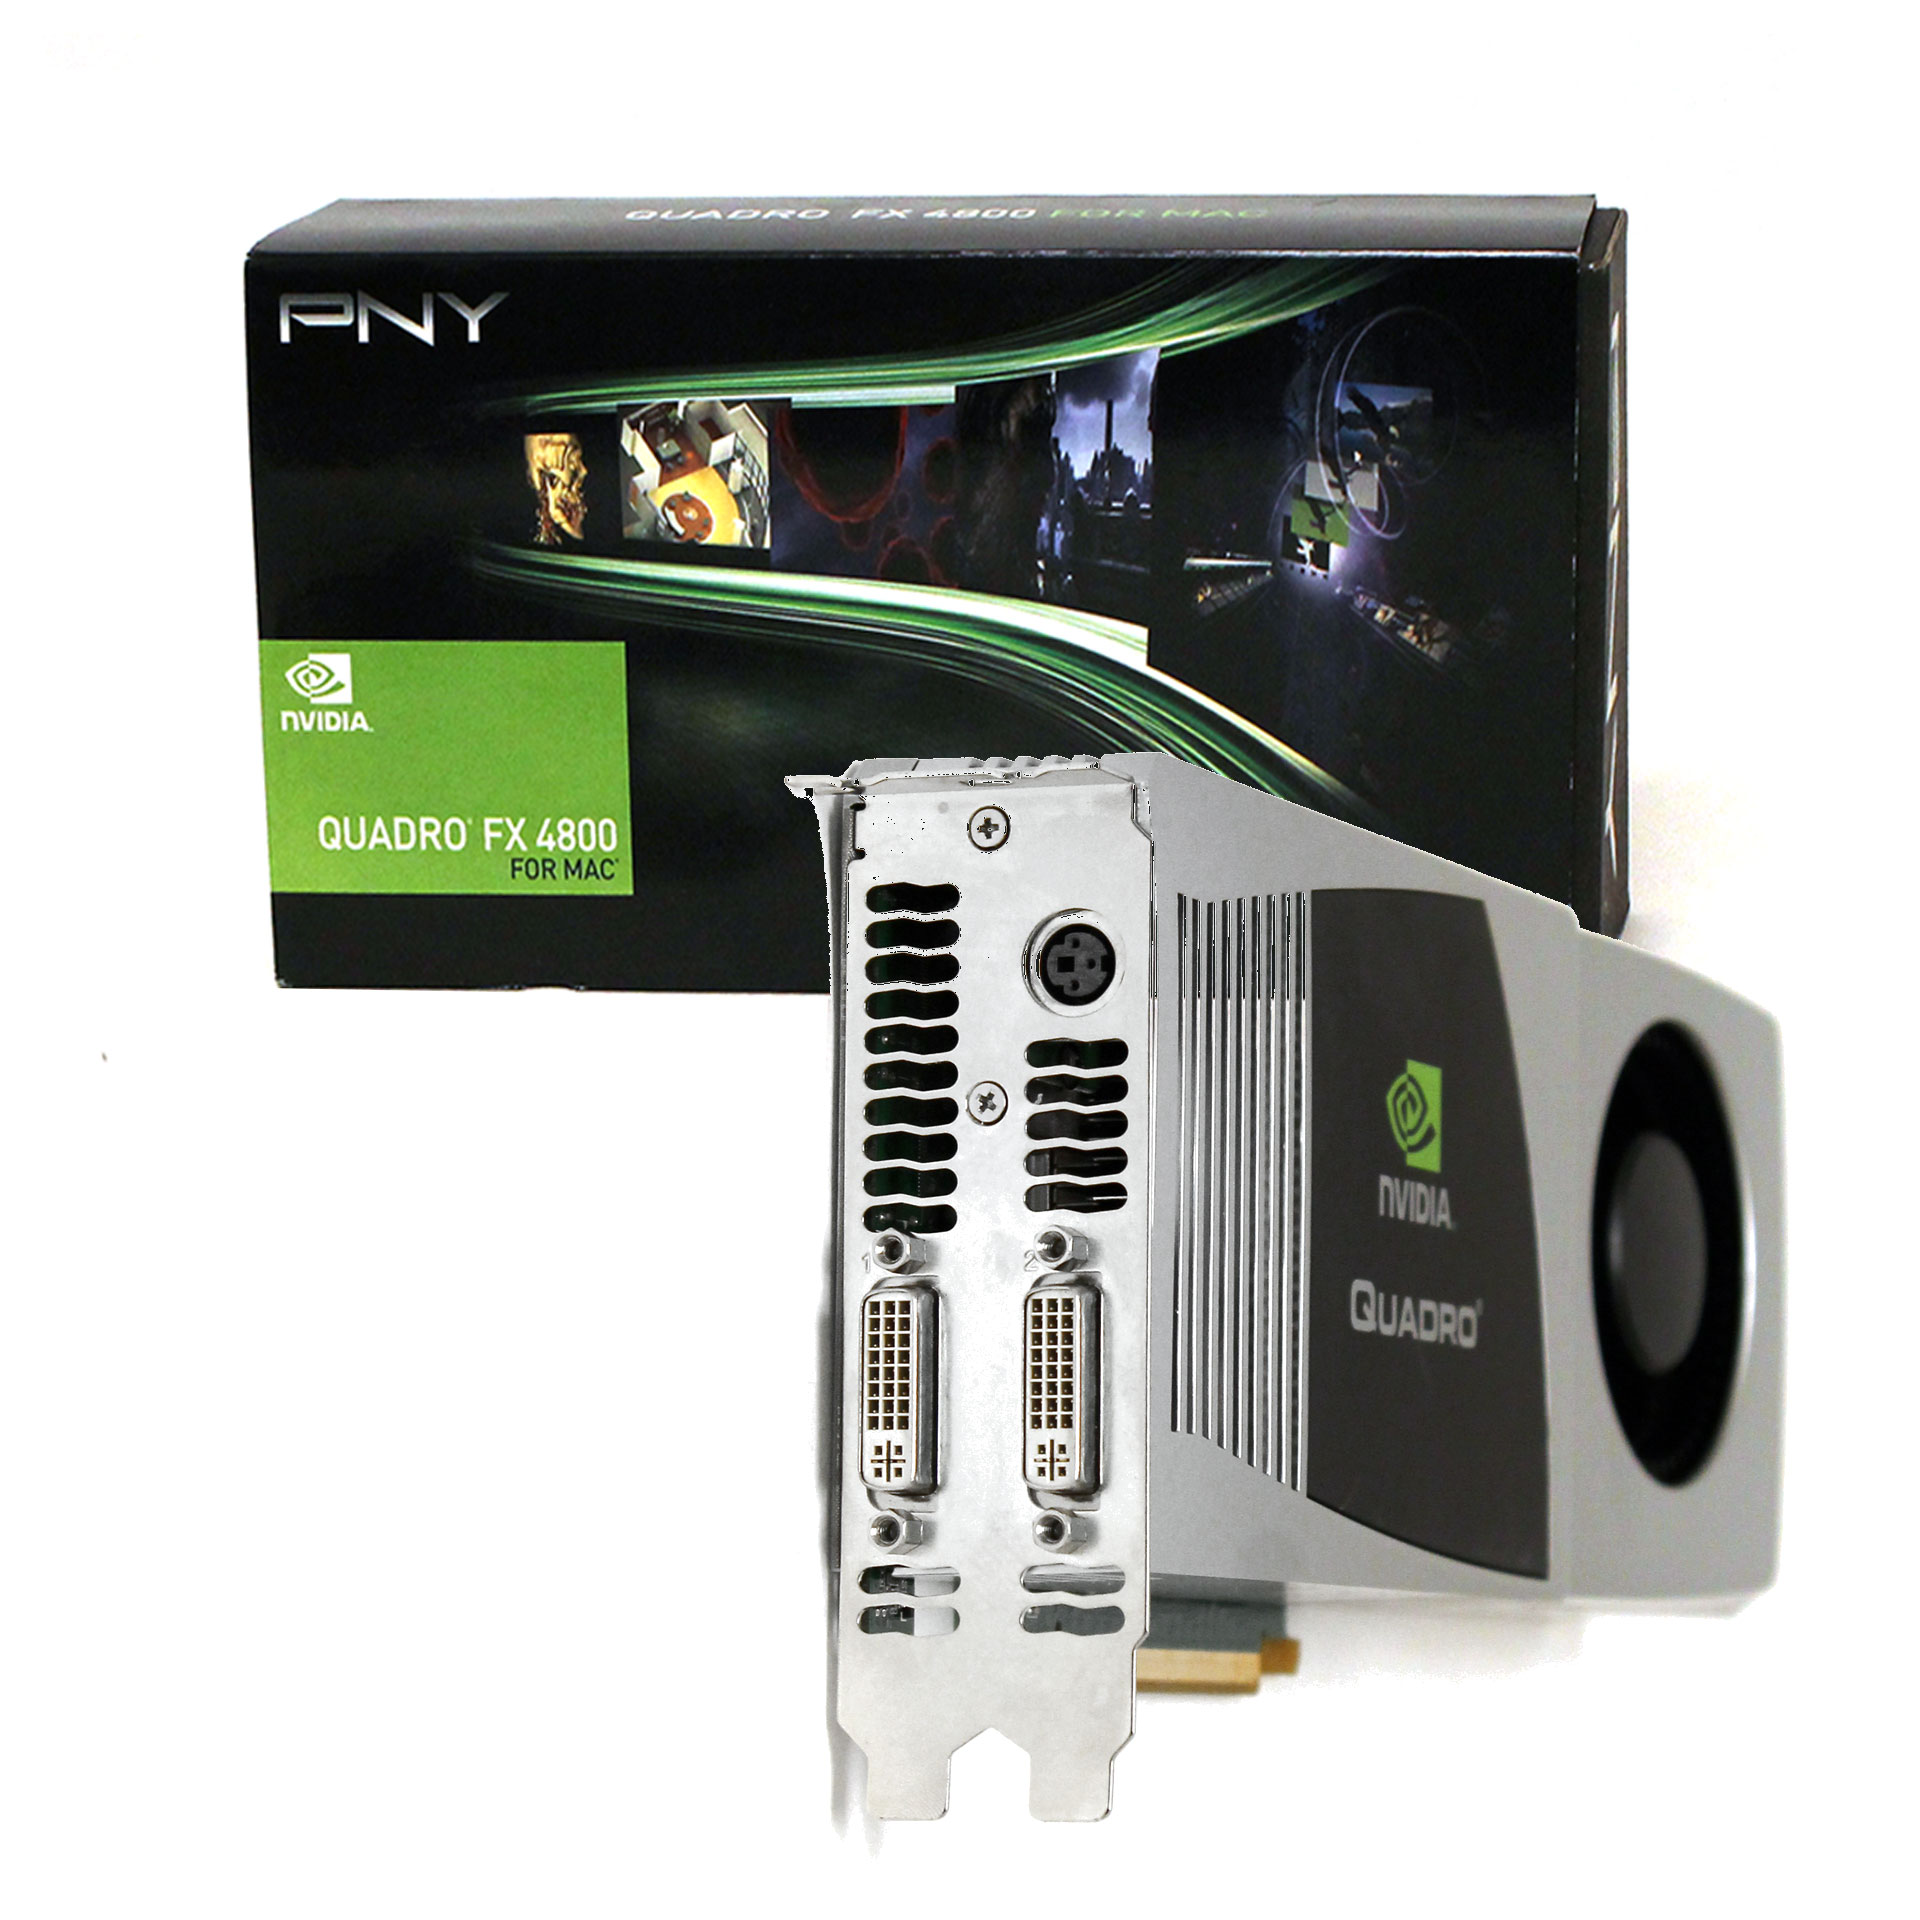 PNY nVidia Quadro FX4800 for MAC Video Card VCQFX4800MACX16-PB - Click Image to Close